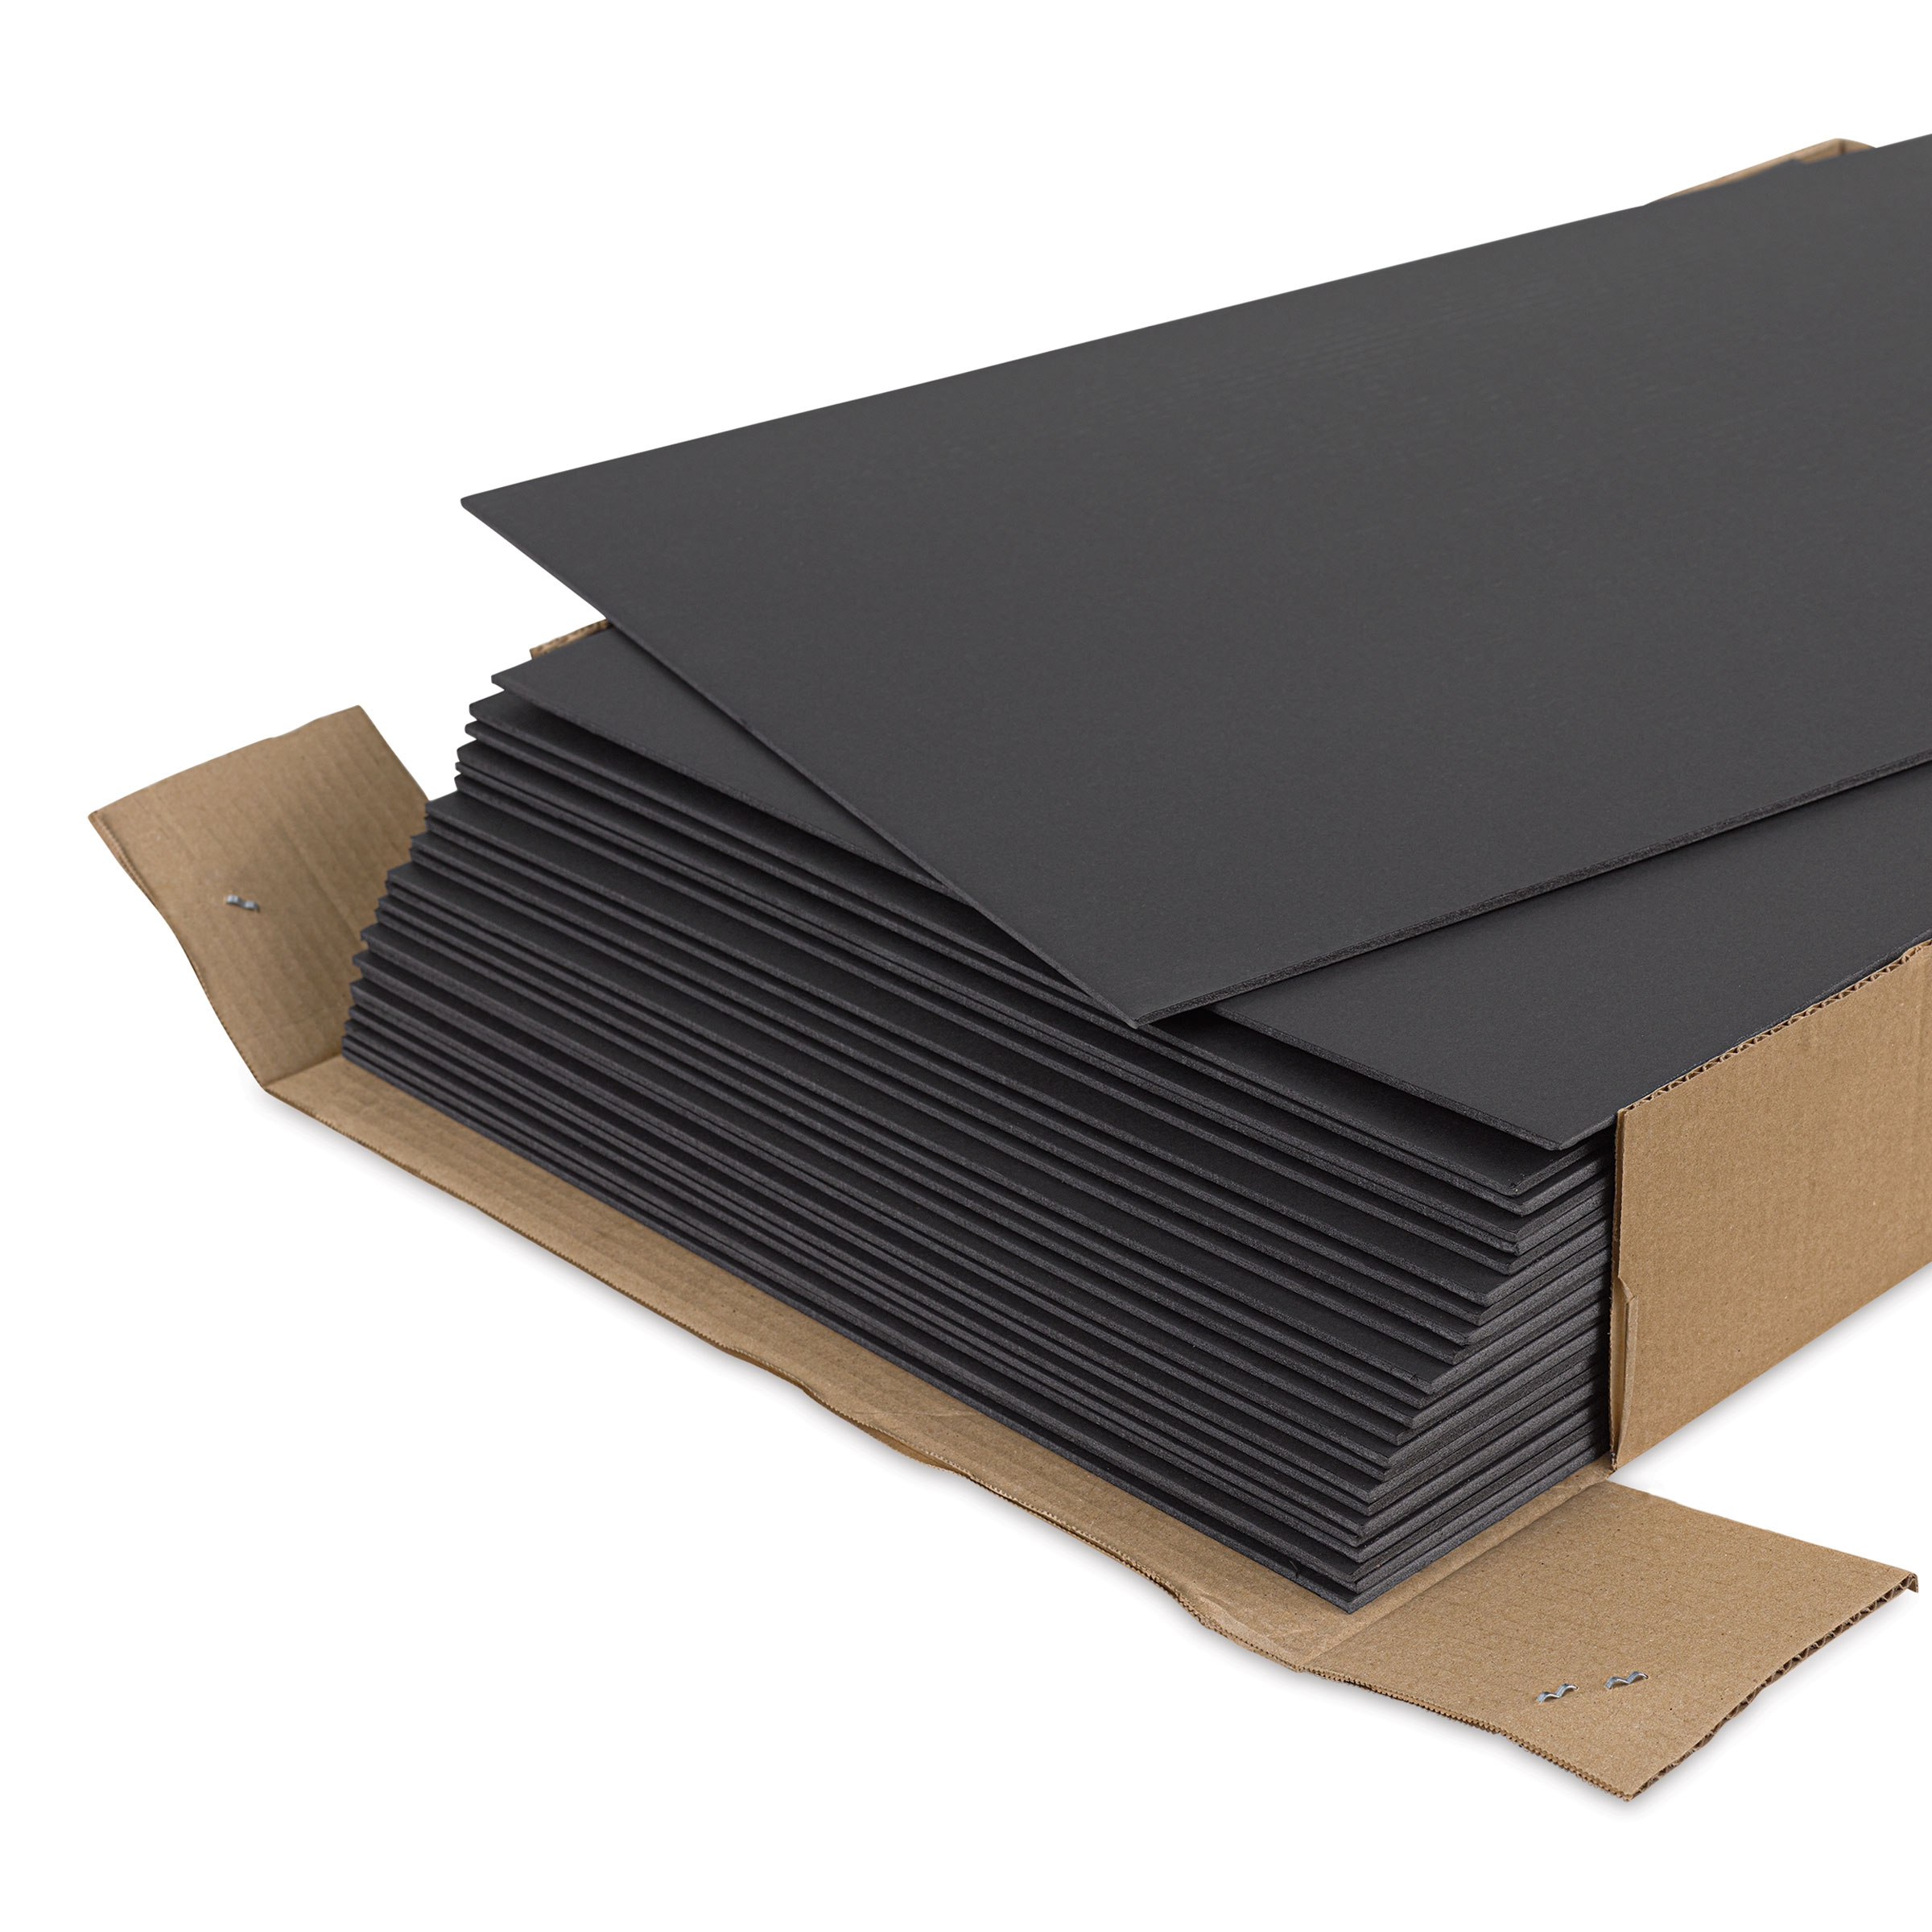 Blackcore Foam Board - 30 x 40 x 1/2, Black, Single Sheet